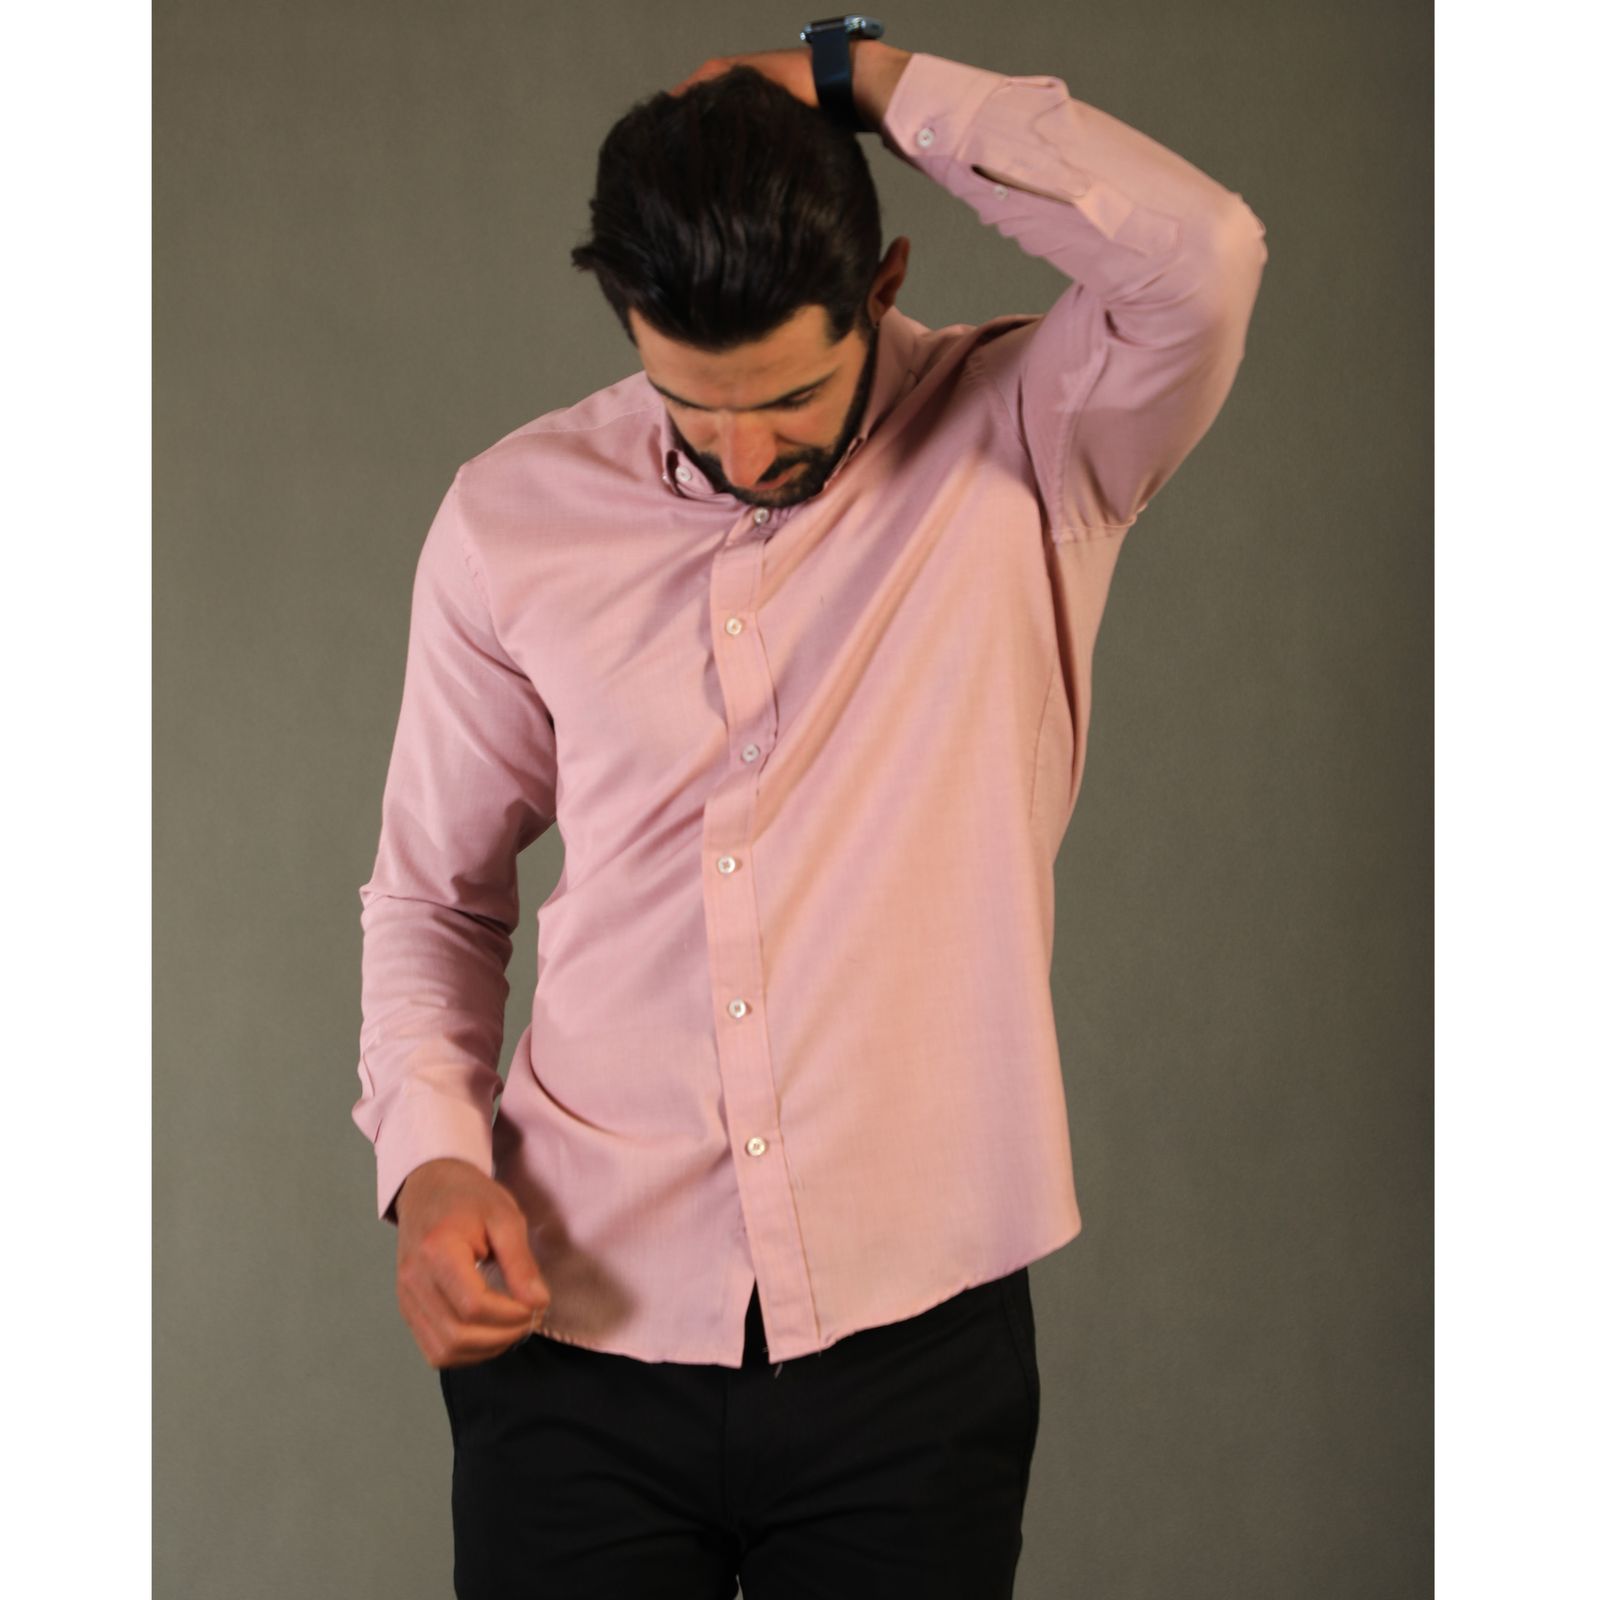 پیراهن آستین بلند مردانه ورسلی مدل 1009-086 -  - 3